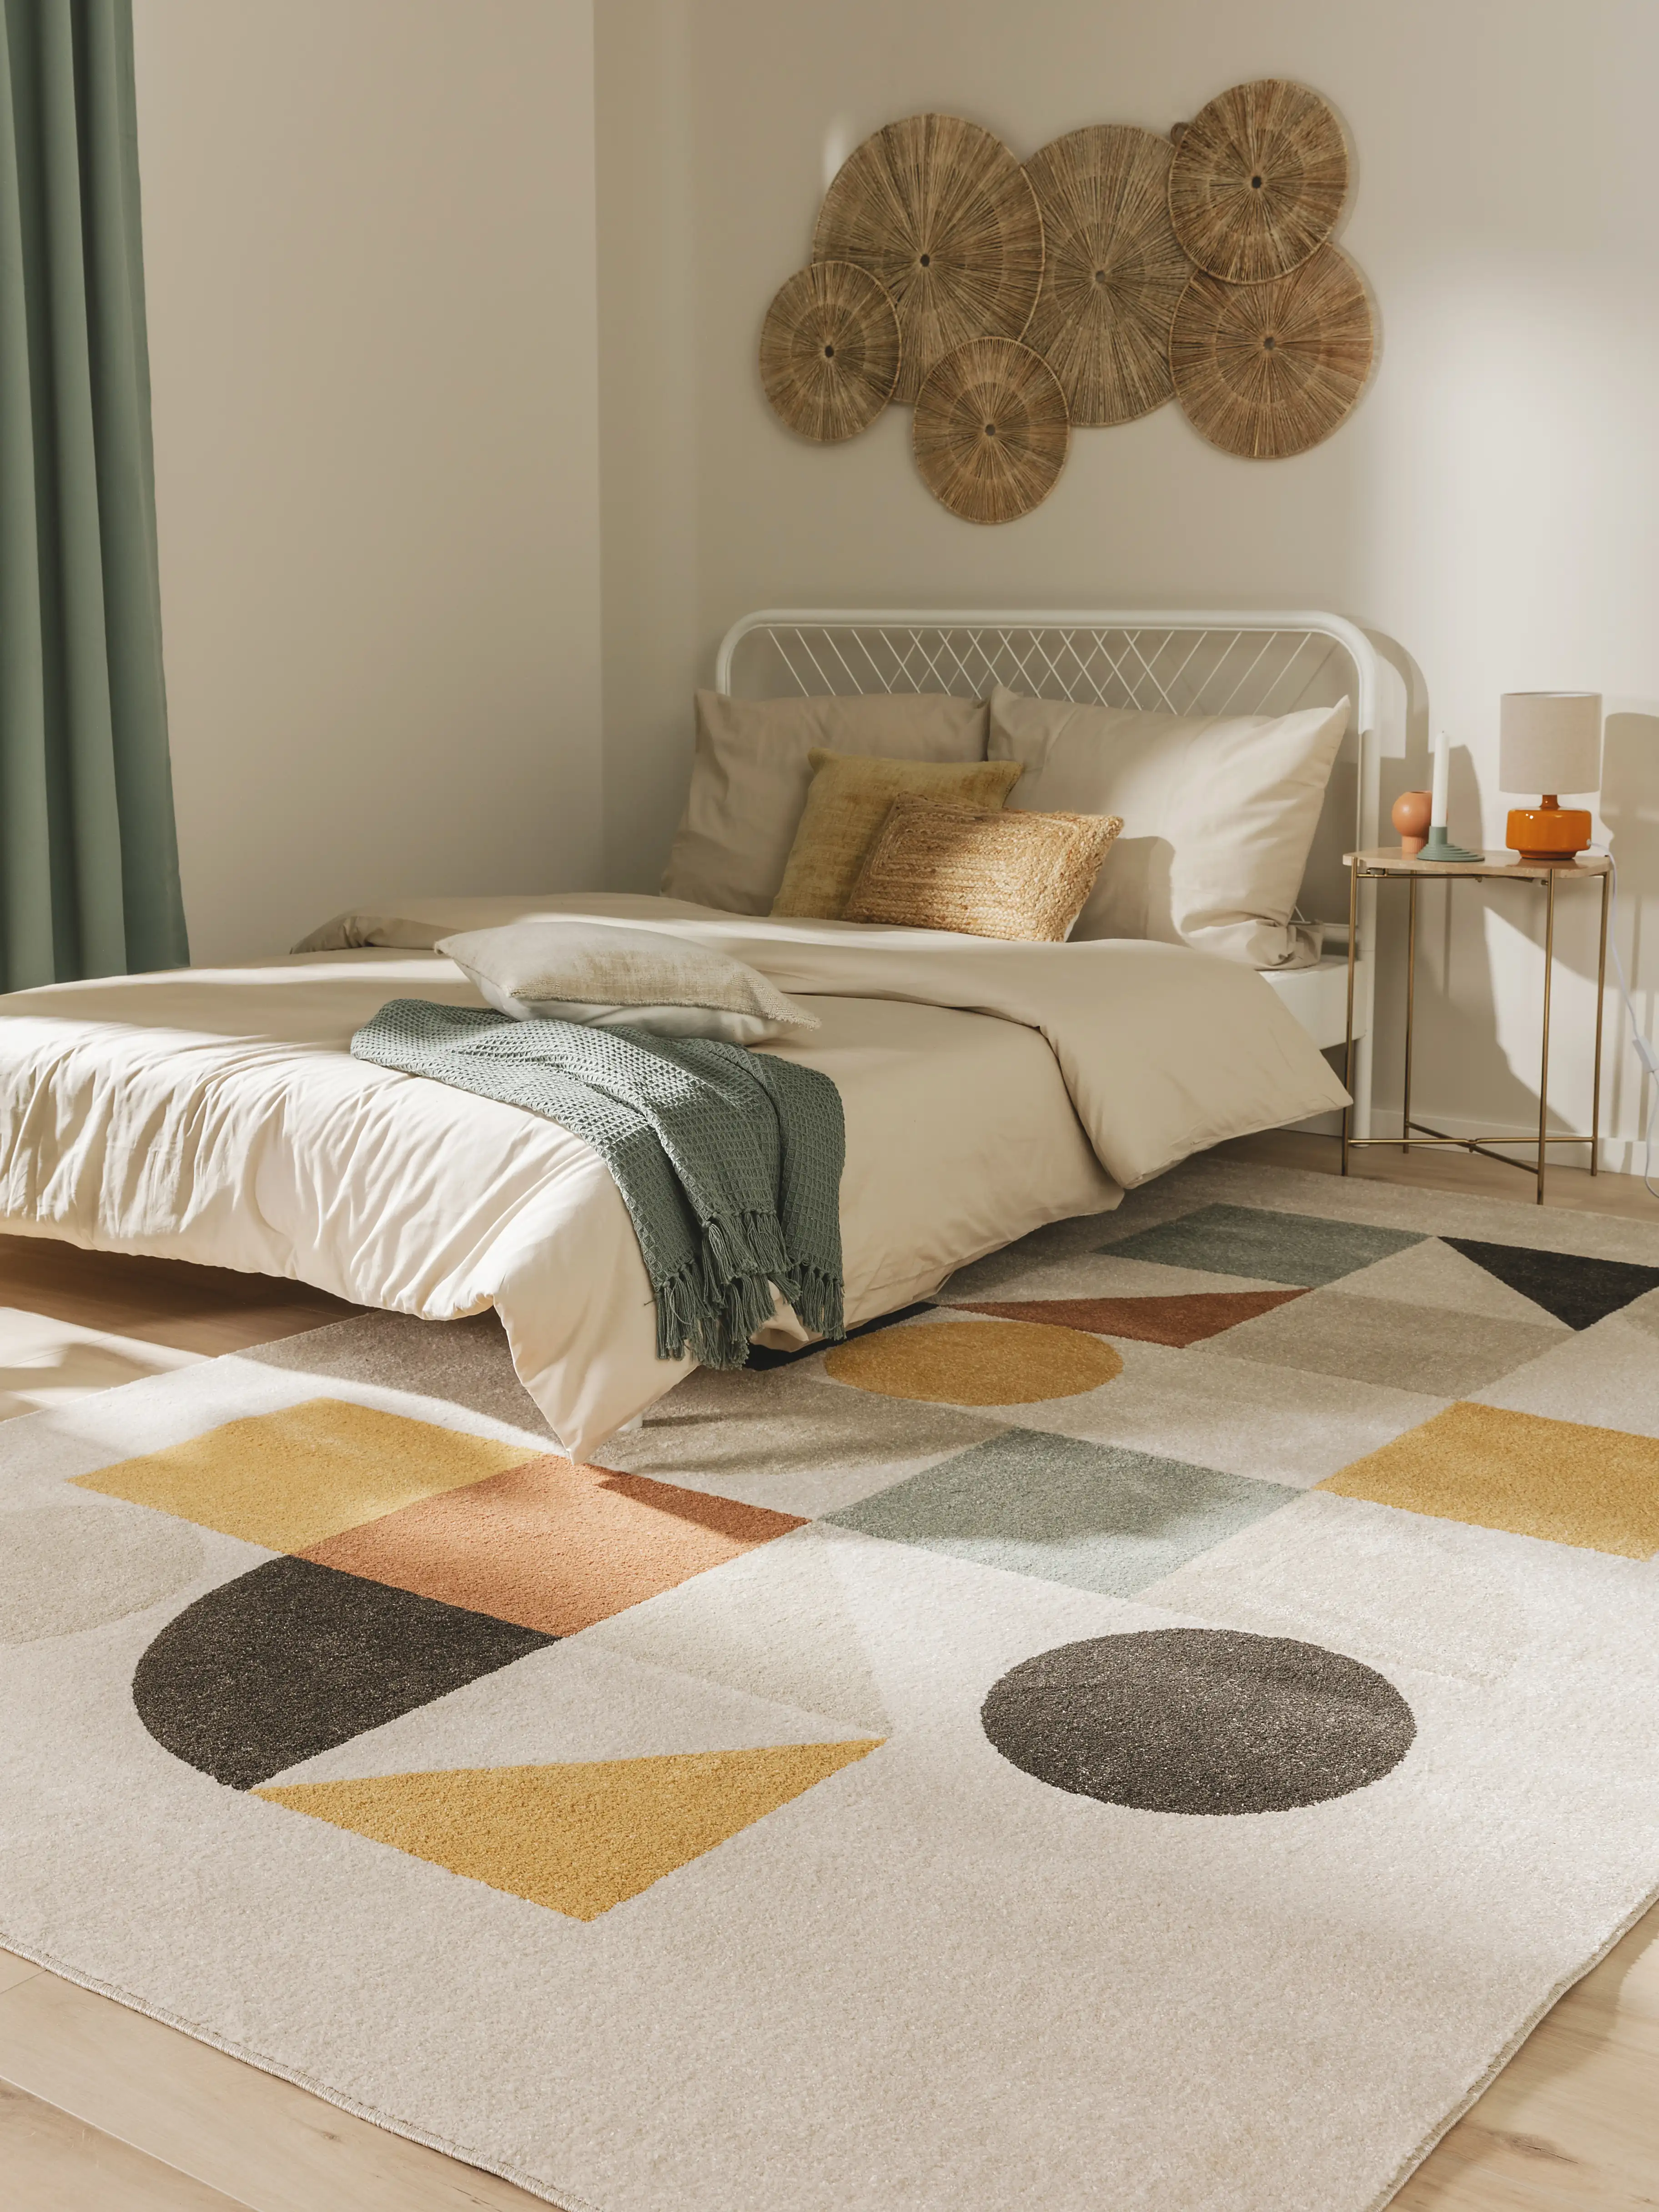 Stylischer Schlafbereich im Jugendzimmer eingerichtet in trendigen Farben wie Gelb, Orange und Mint und geometrischen Mustern